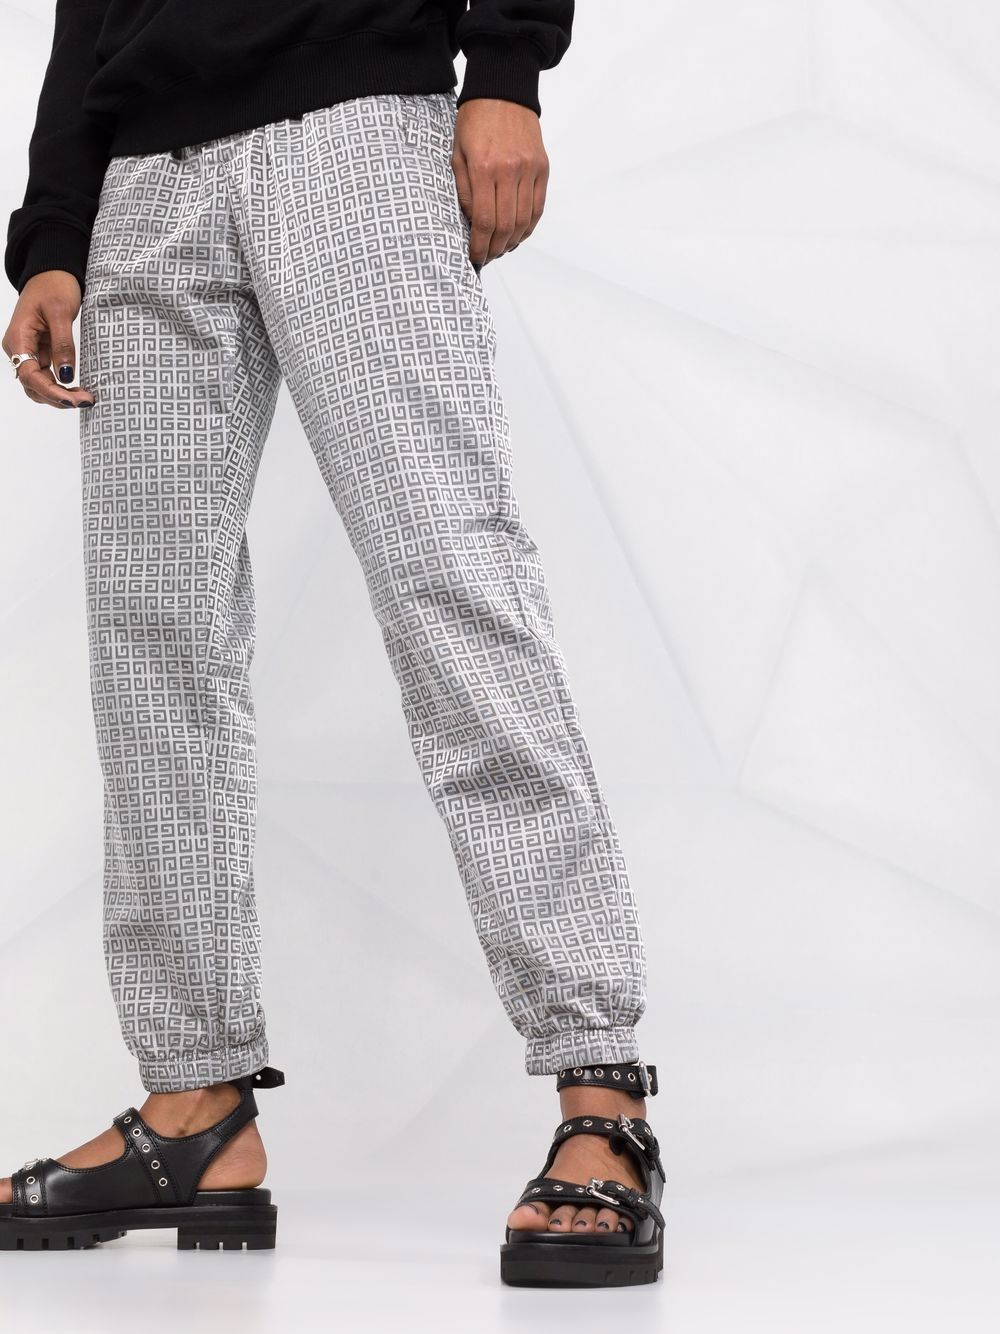 фото Givenchy спортивные брюки с монограммой 4g